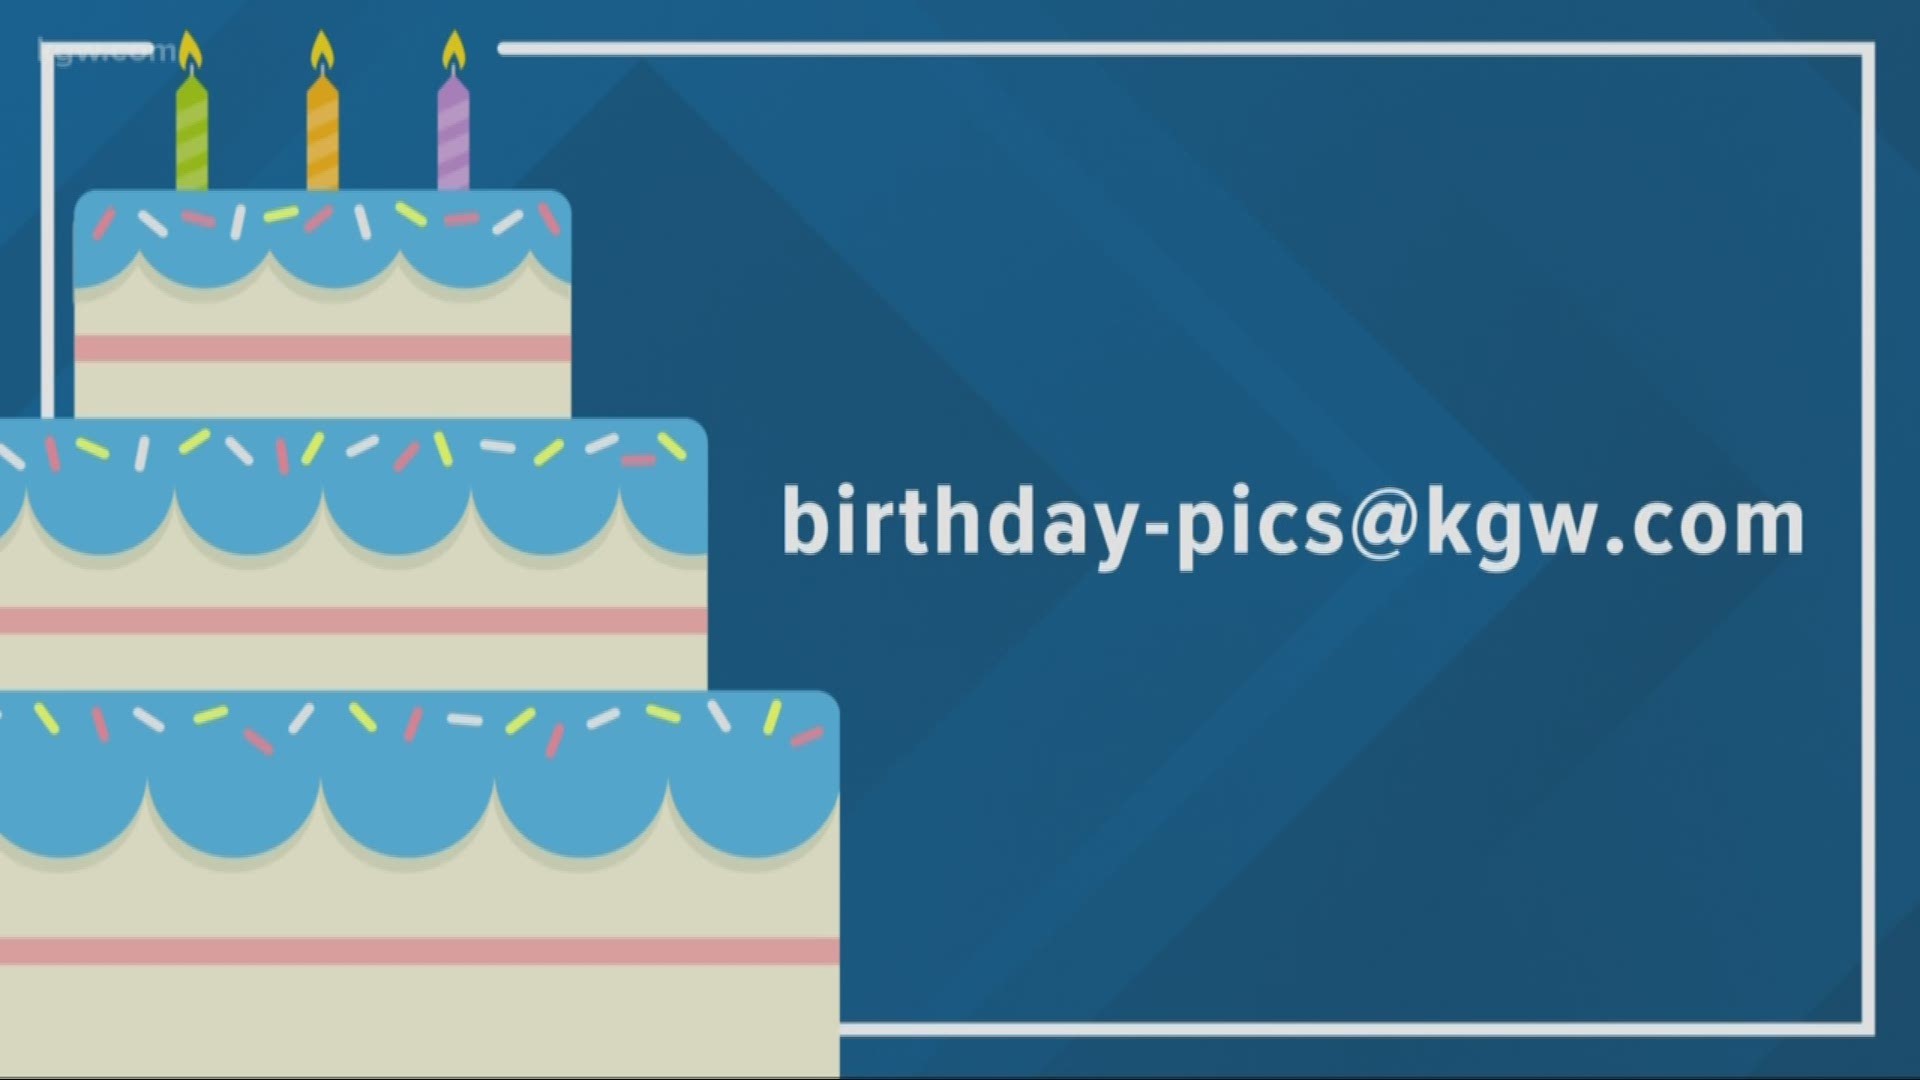 KGW viewer birthdays: 3-16-19